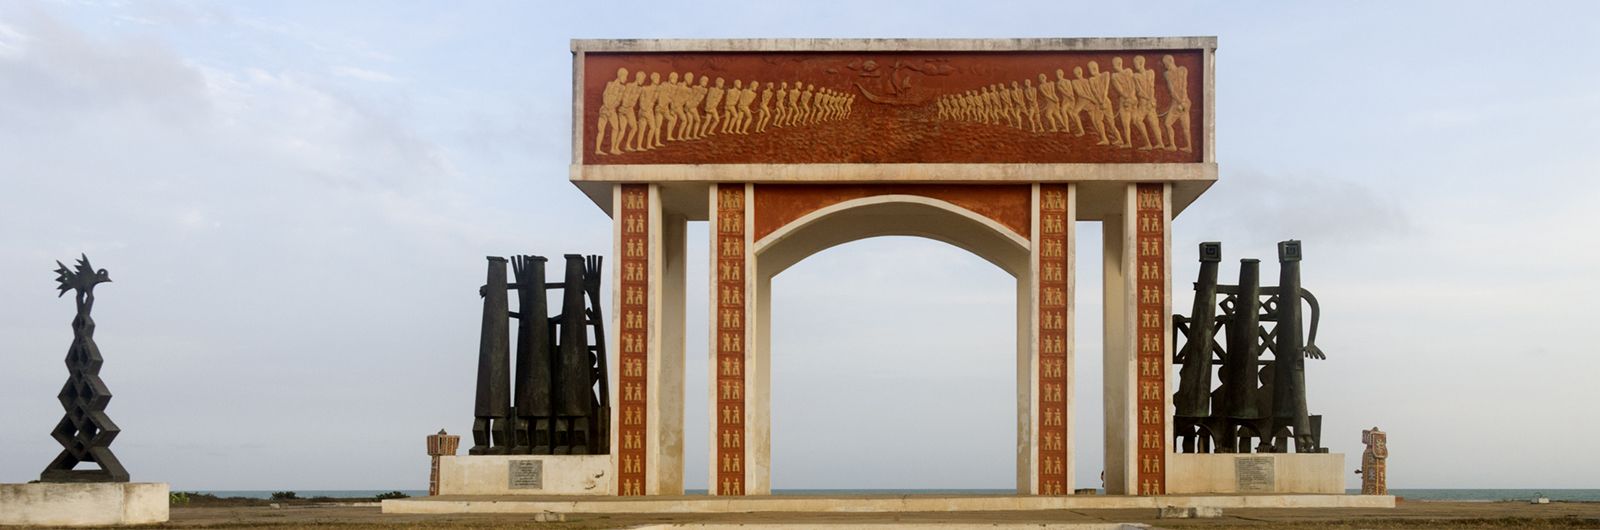 puerta de no retorno ouidah